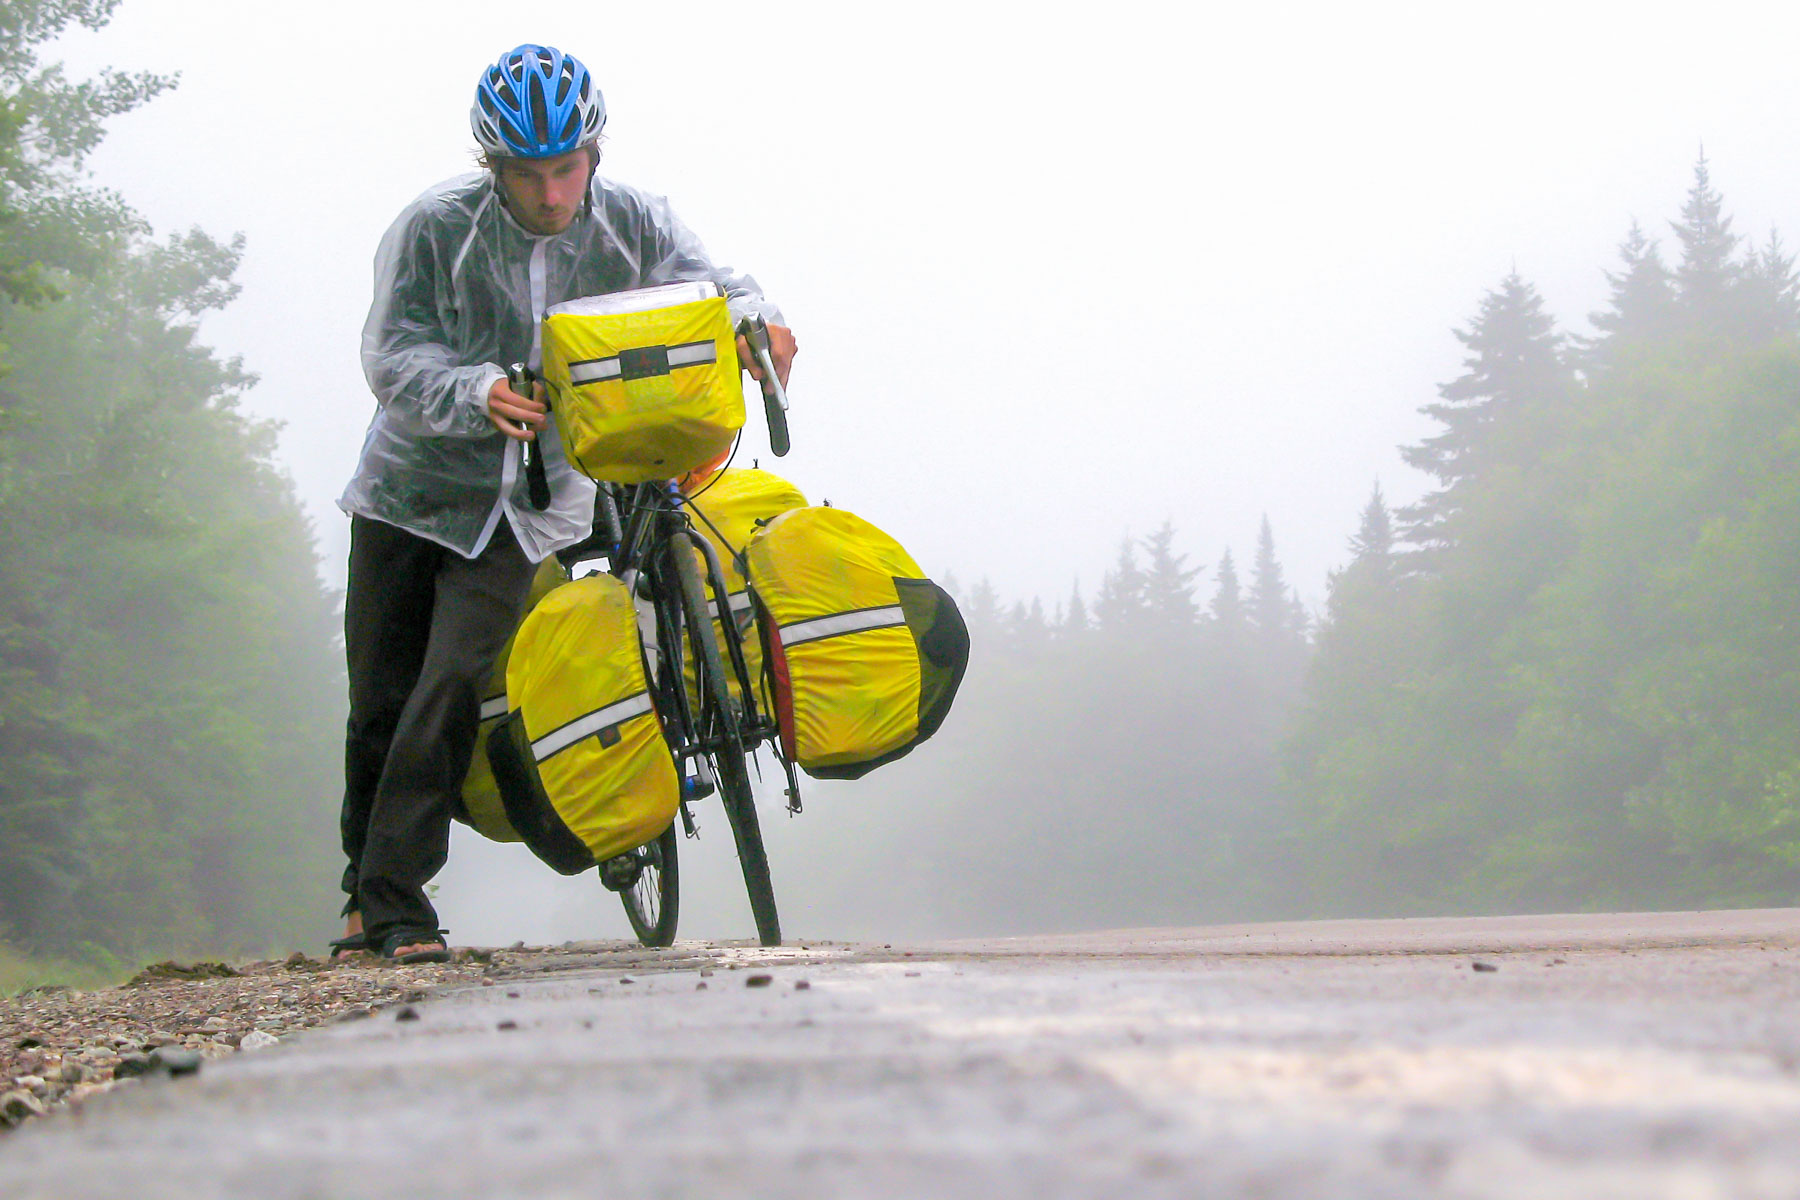 Par une journée brumeuse, un homme pousse son vélo de cyclotourisme chargé dans une montée abrupte.